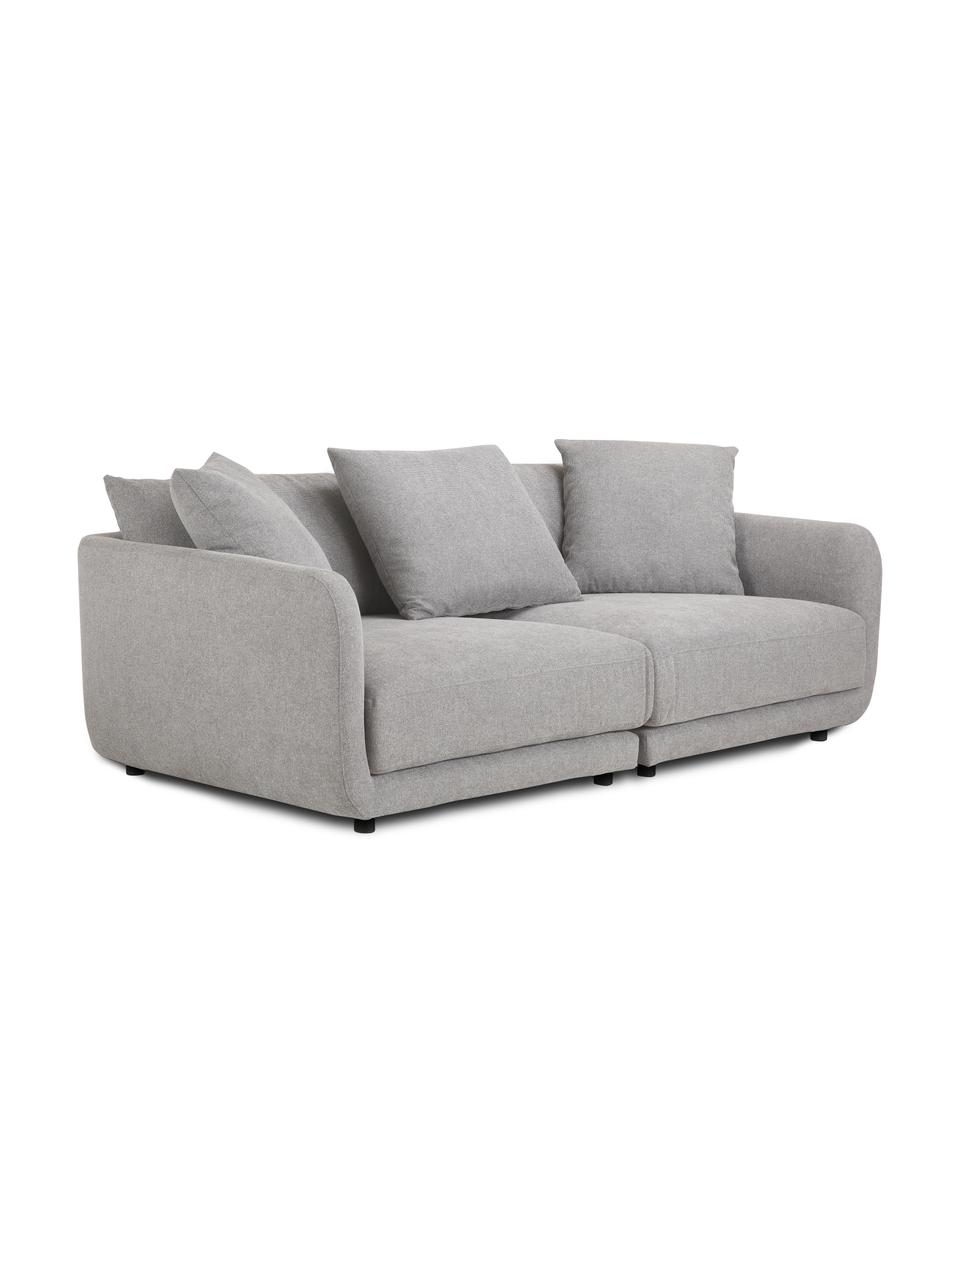 Sofa modułowa Jasmin (3-osobowa), Tapicerka: 85% poliester, 15% nylon , Nogi: tworzywo sztuczne, Szara tkanina, S 208 x W 84 cm